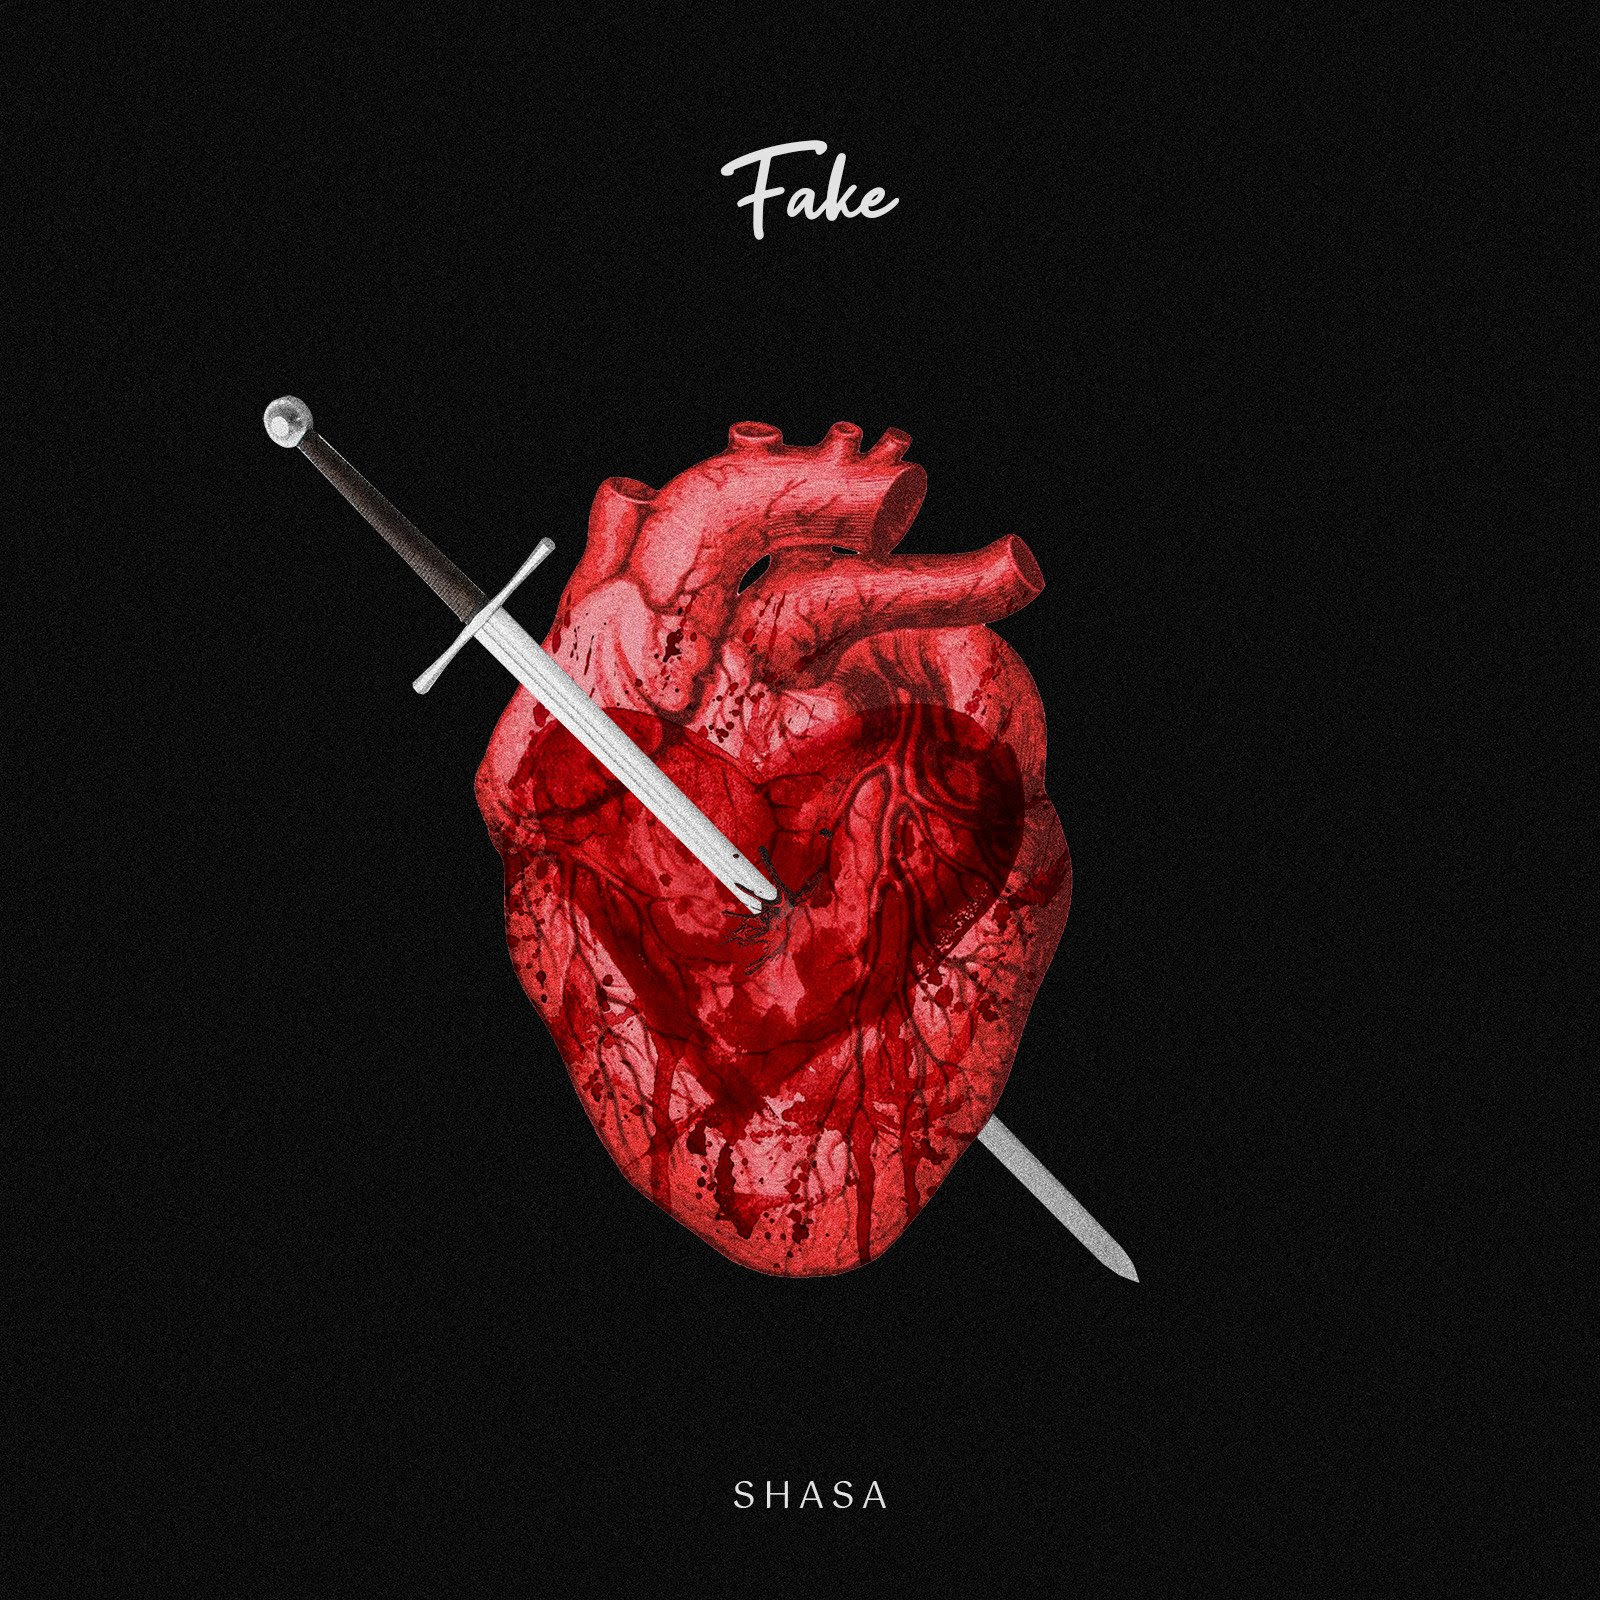 SHASA: dal 21 giugno in radio “FAKE” il nuovo singolo